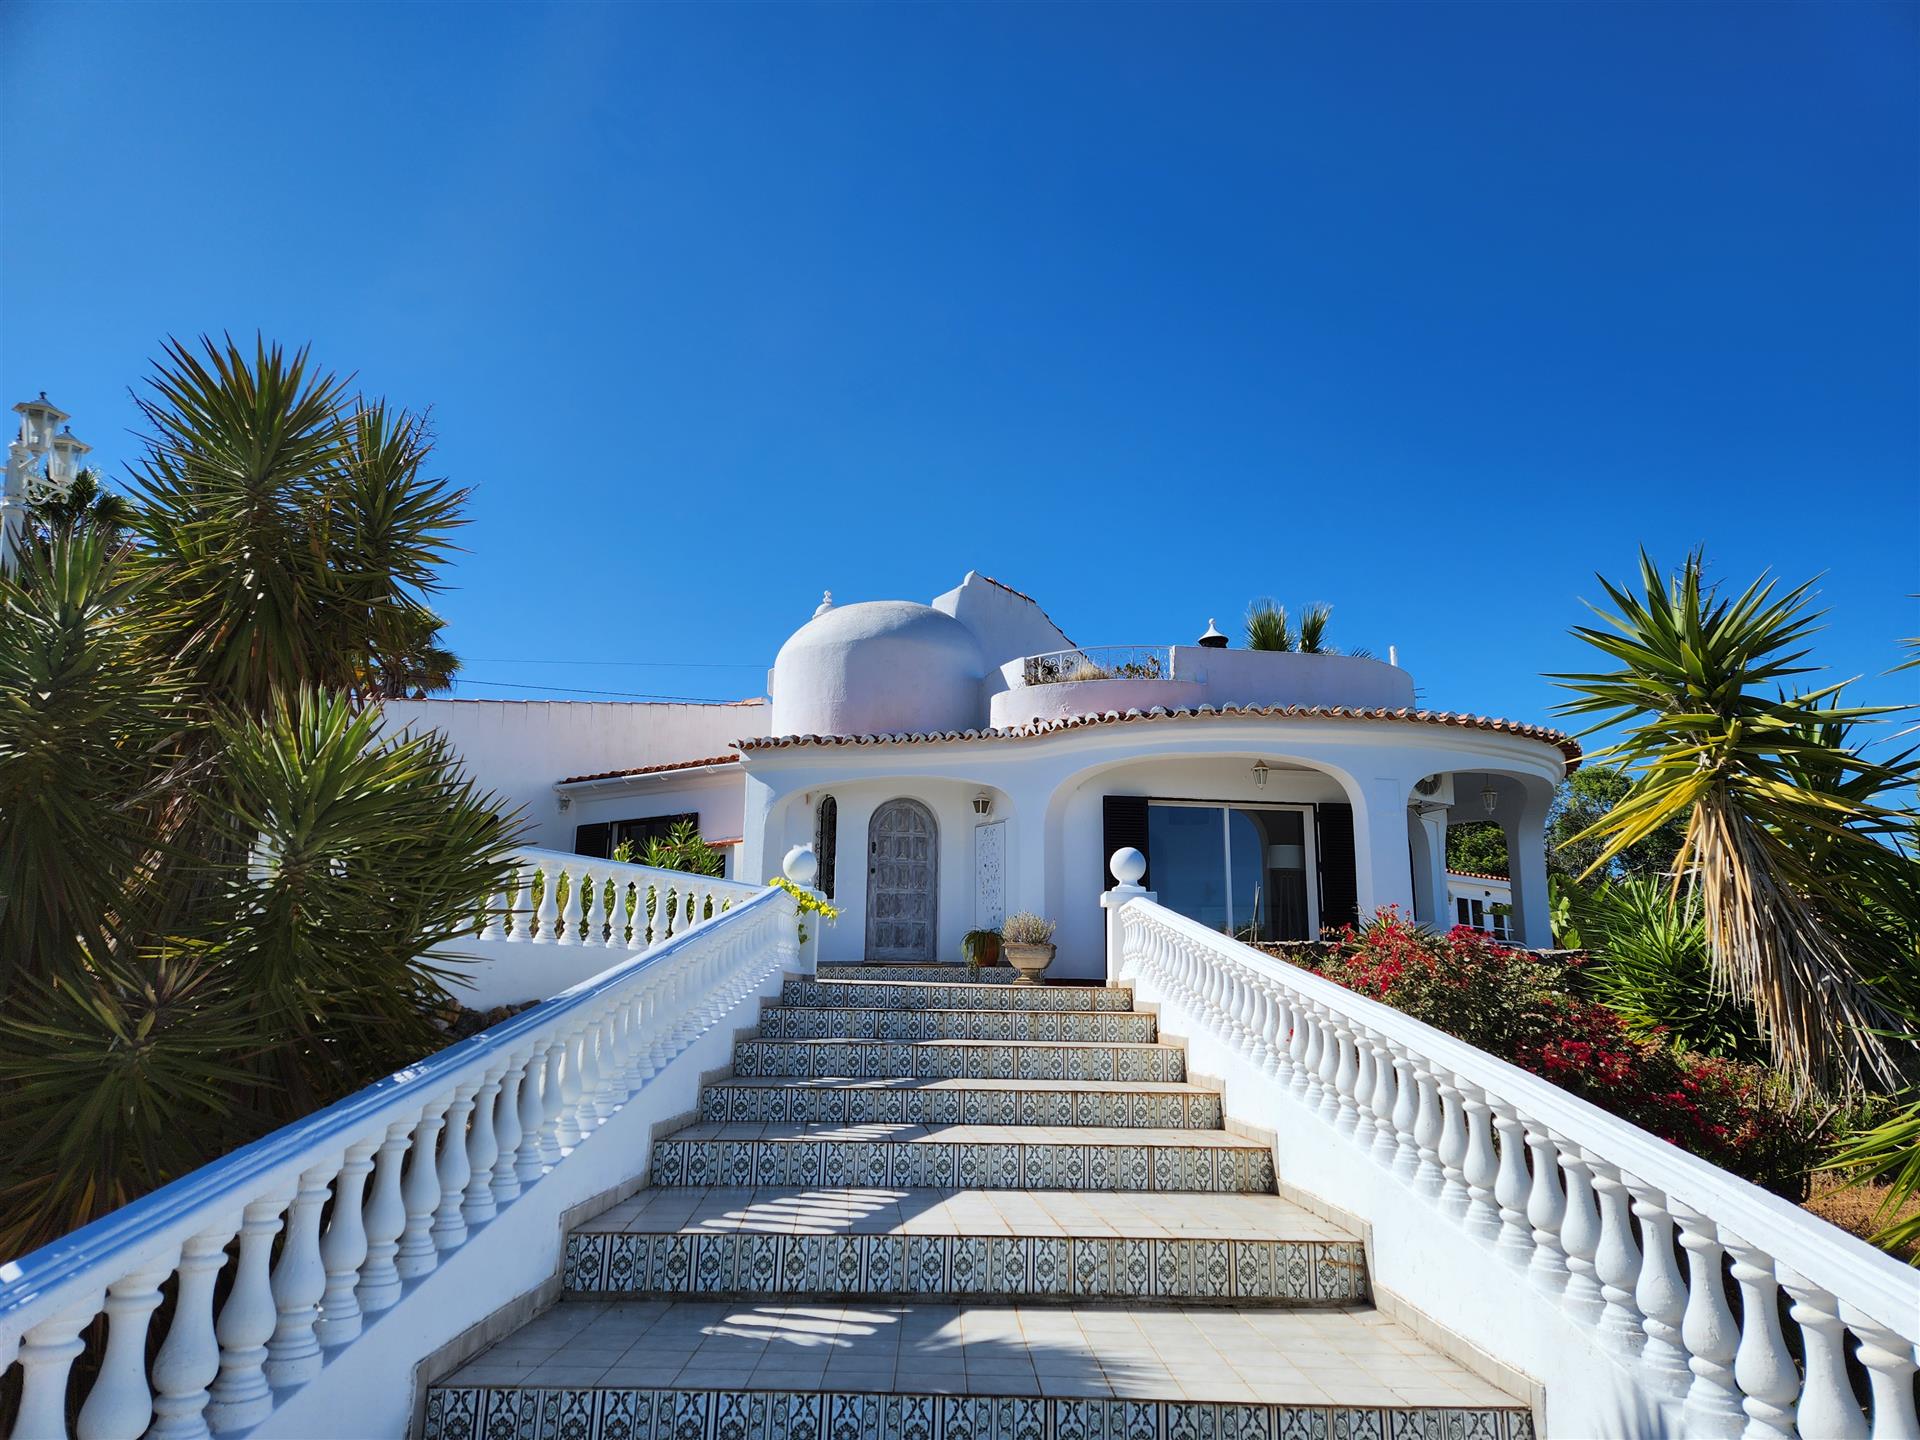 Idyllisk gemmested: Romantisk villa med fortryllende udsigt nær Silves, Portugal